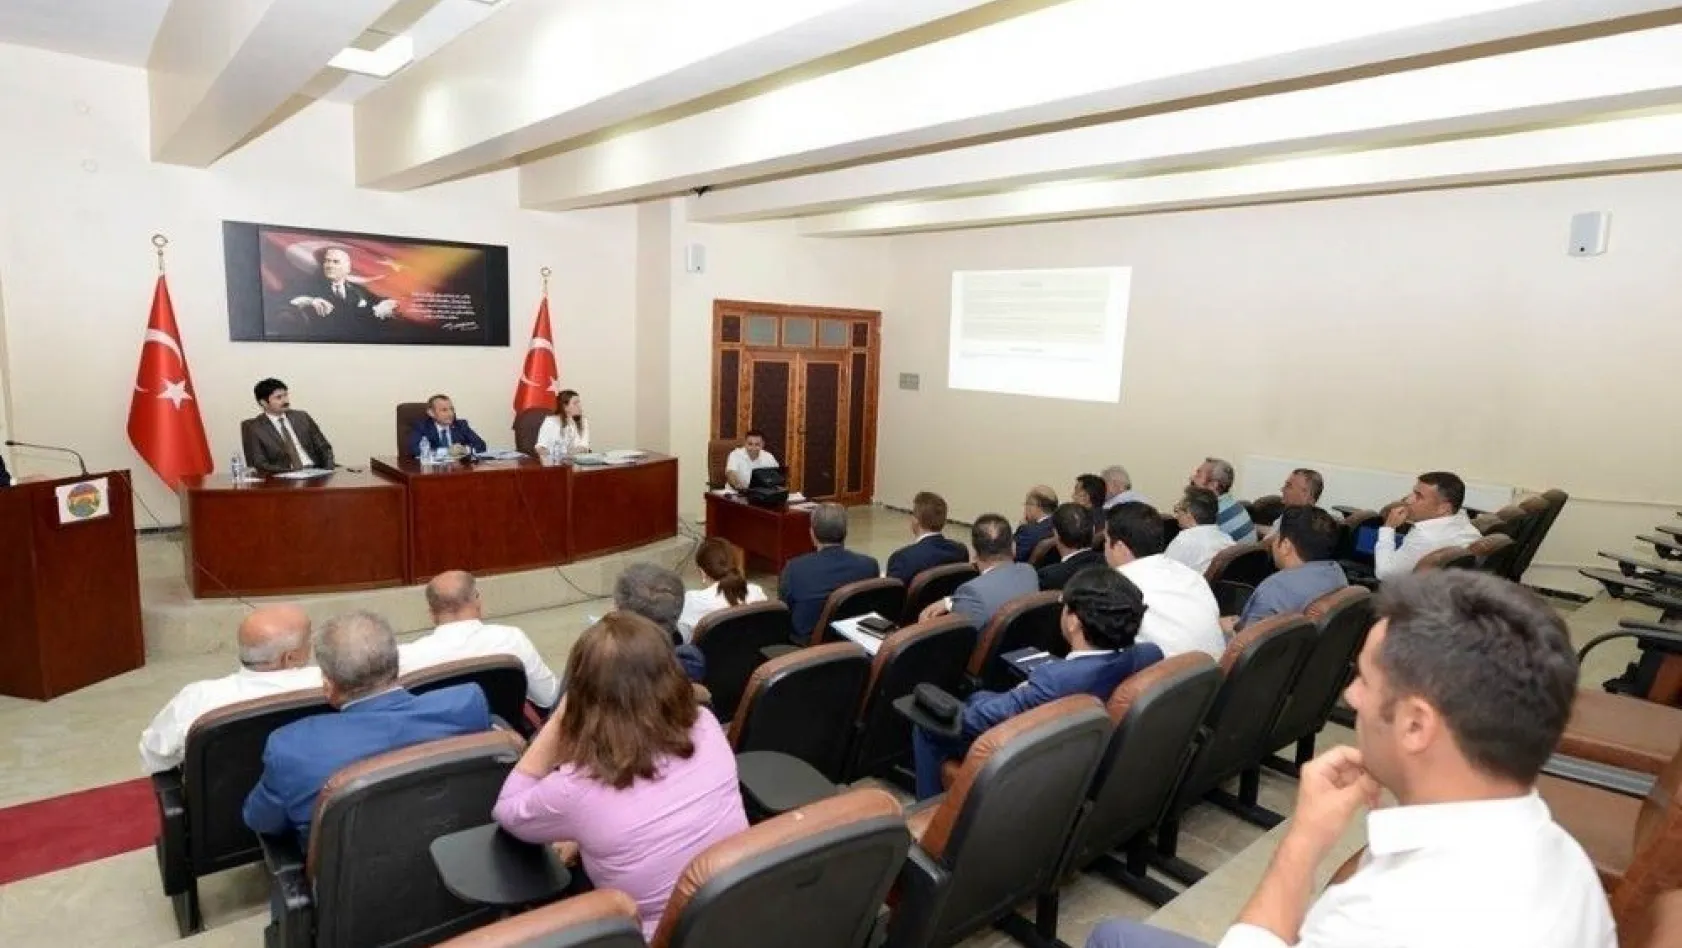 Tunceli'de koordinasyon kurulu toplantısı
